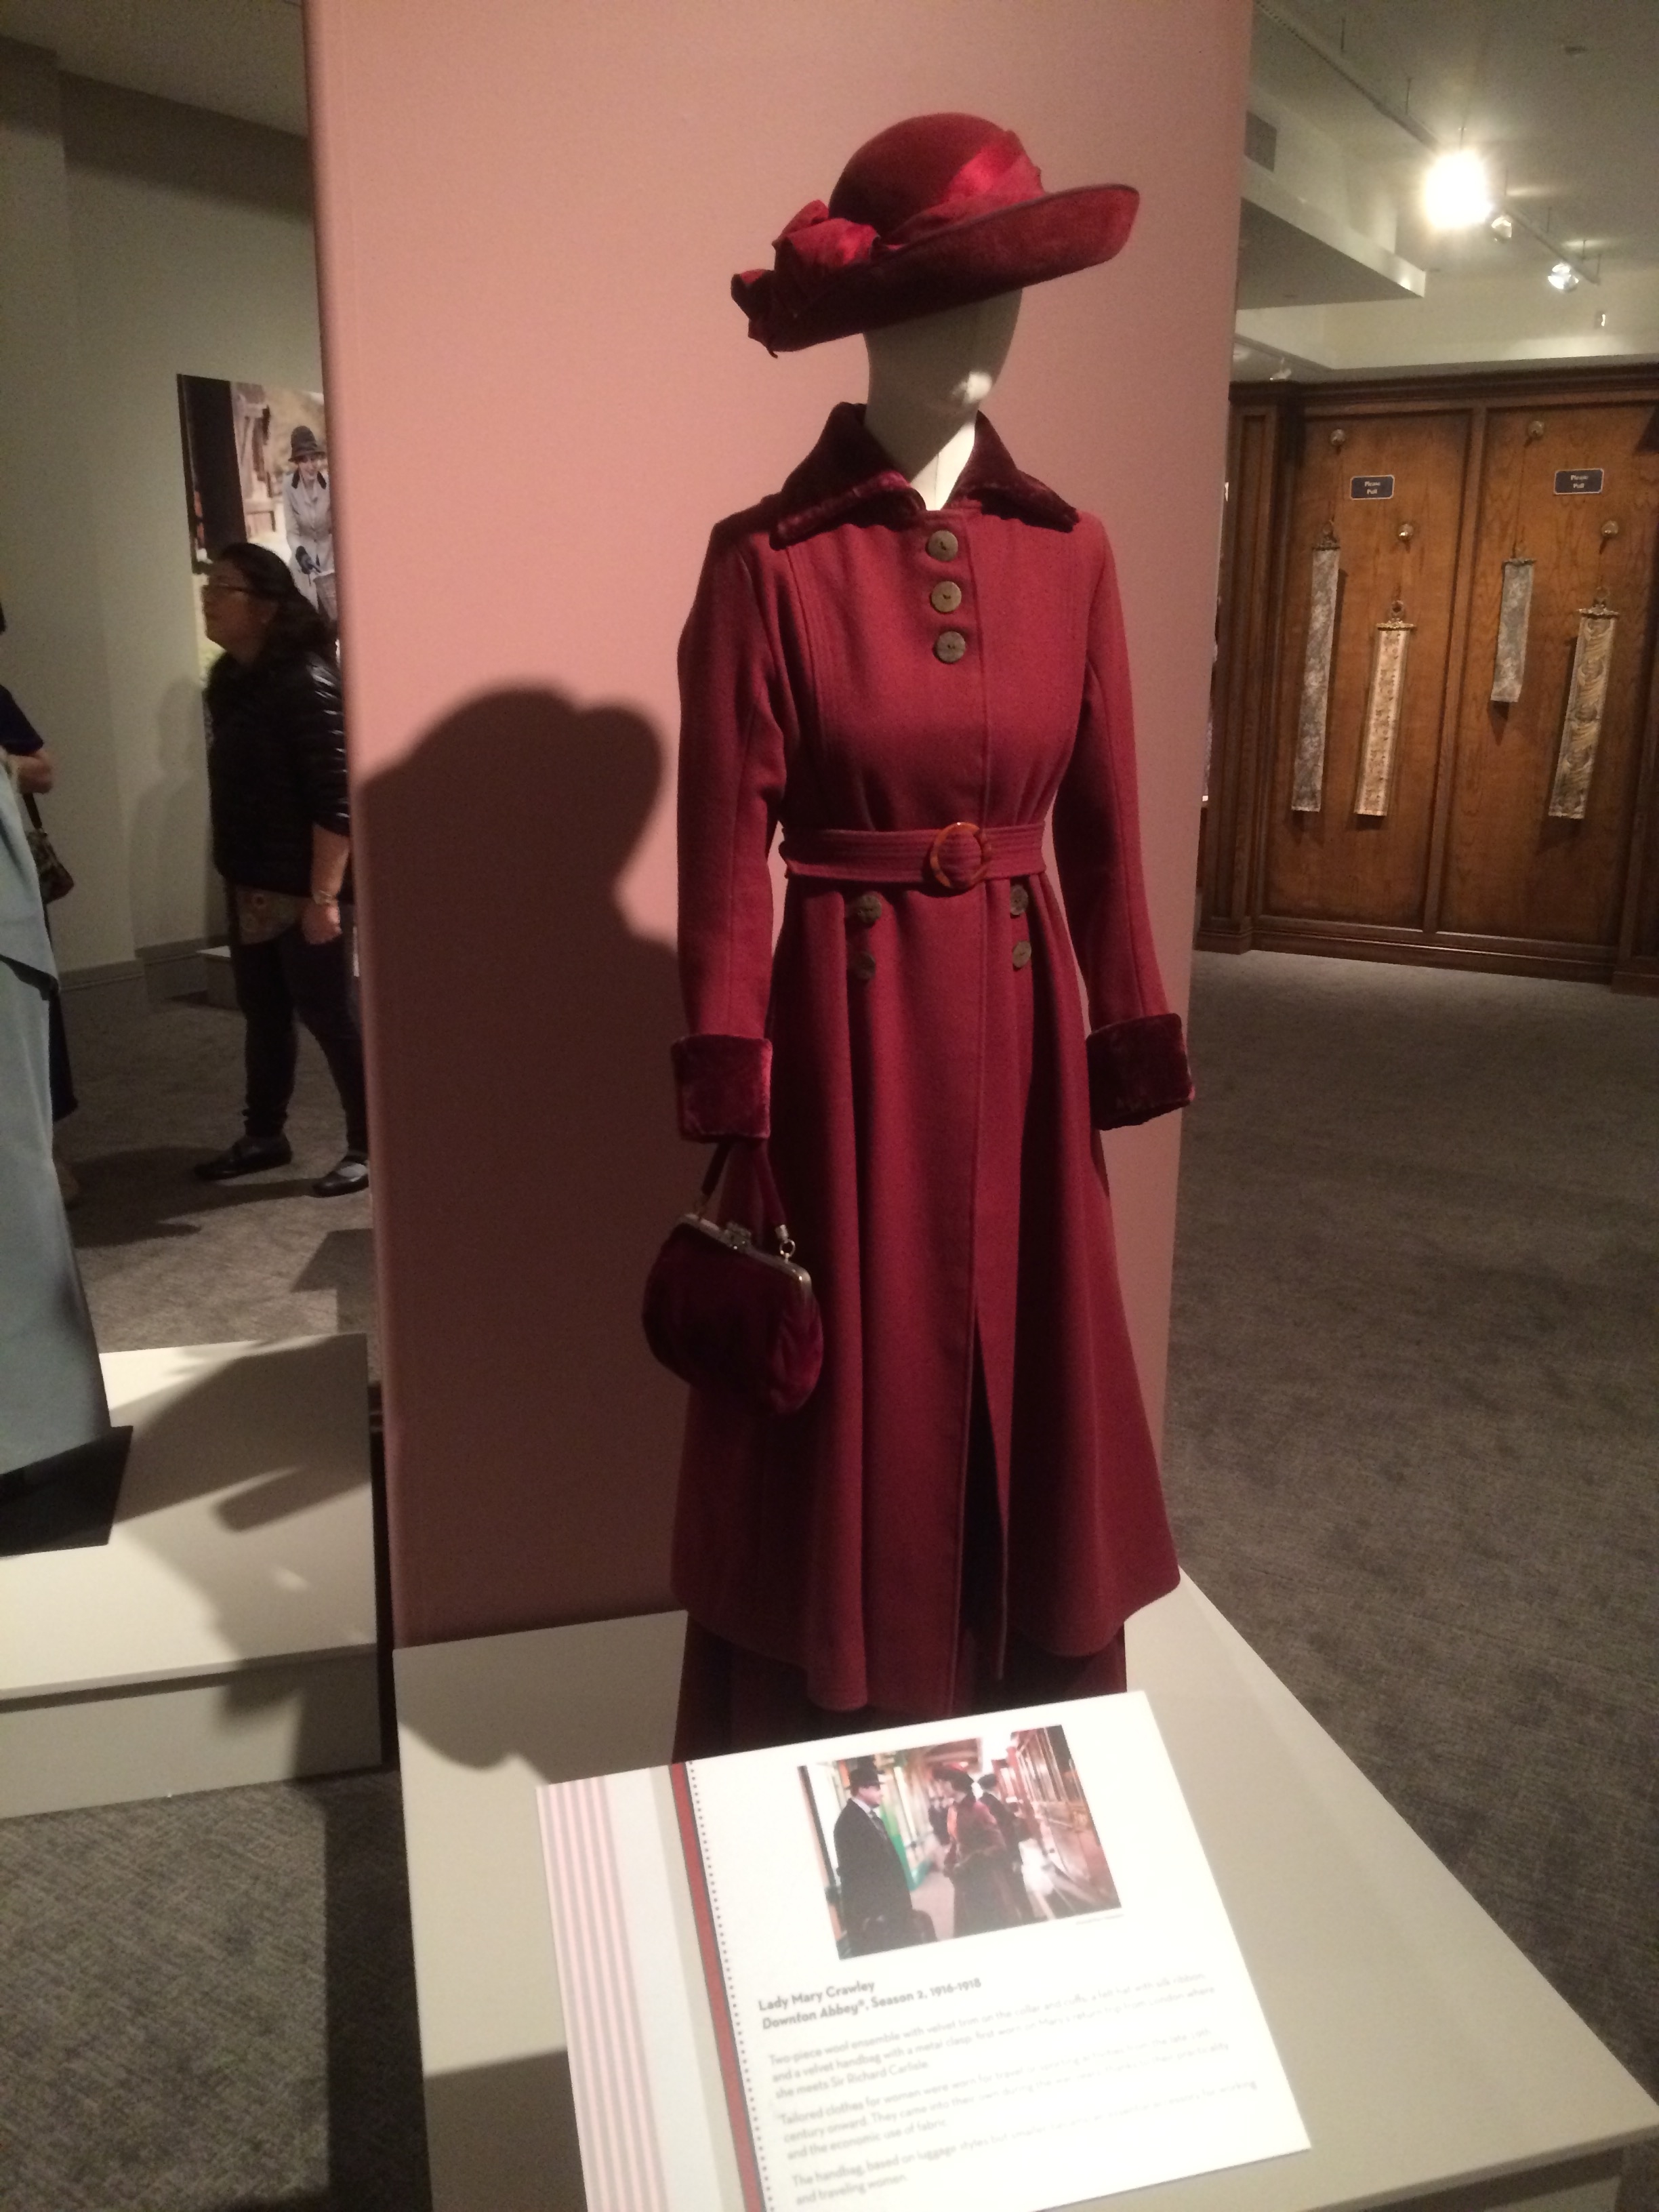 Downton Abbey - Dressing Downton Exhibit